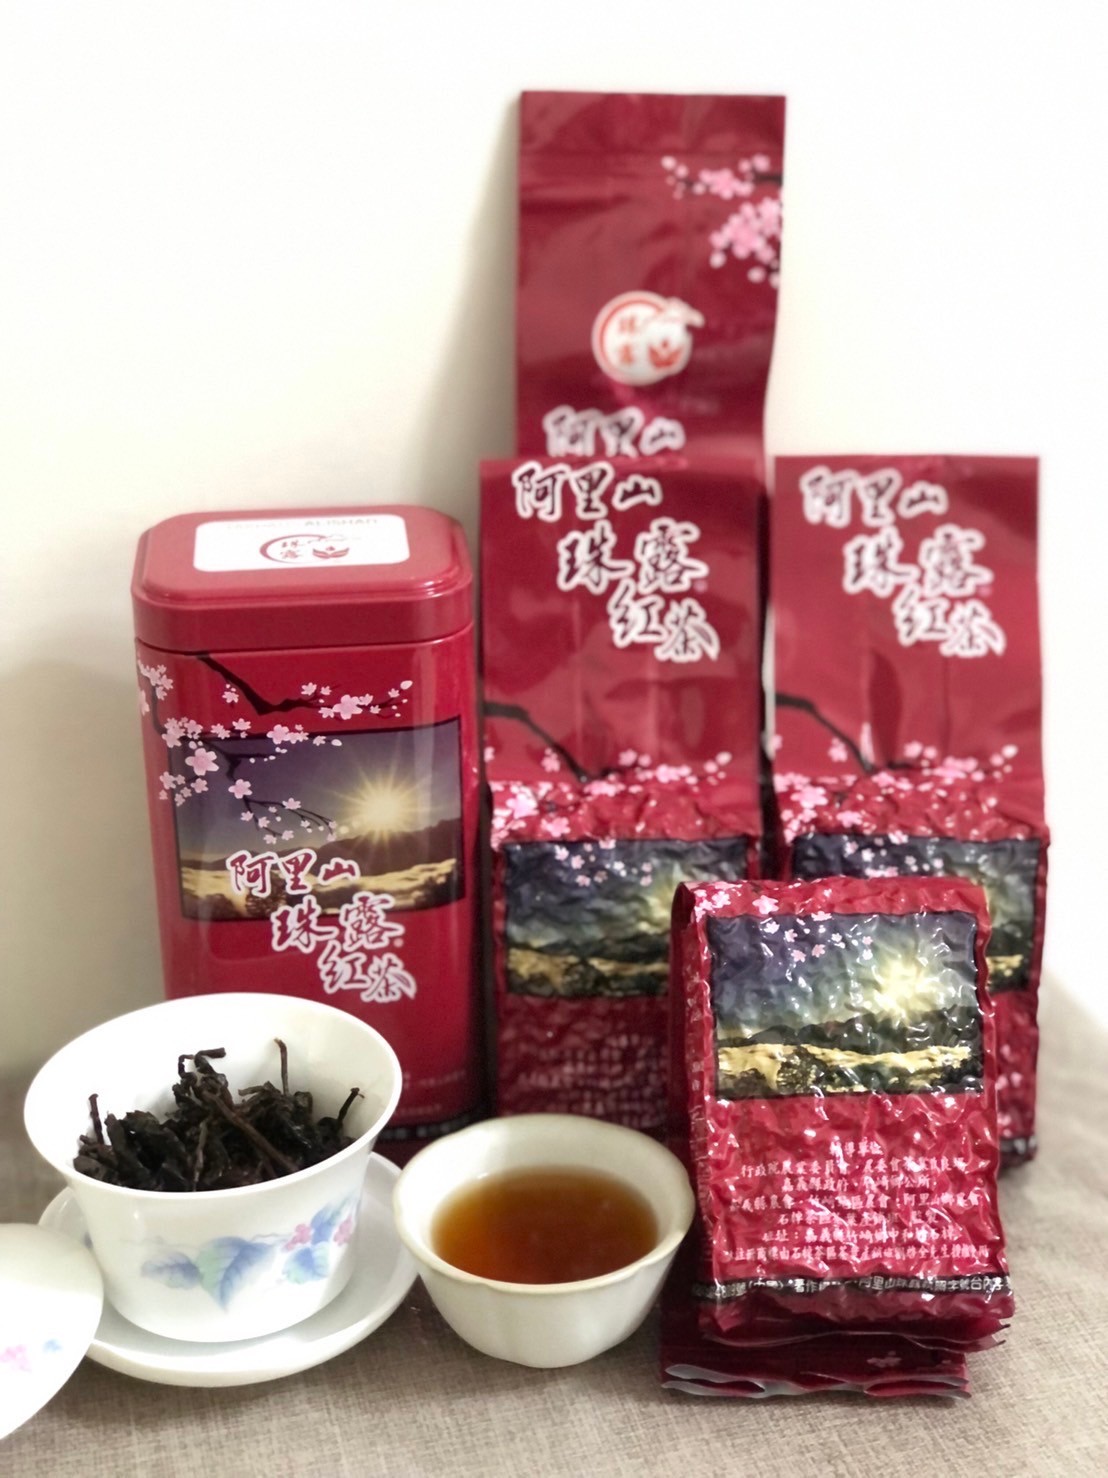 阿里山冬季珠露紅茶(半斤)